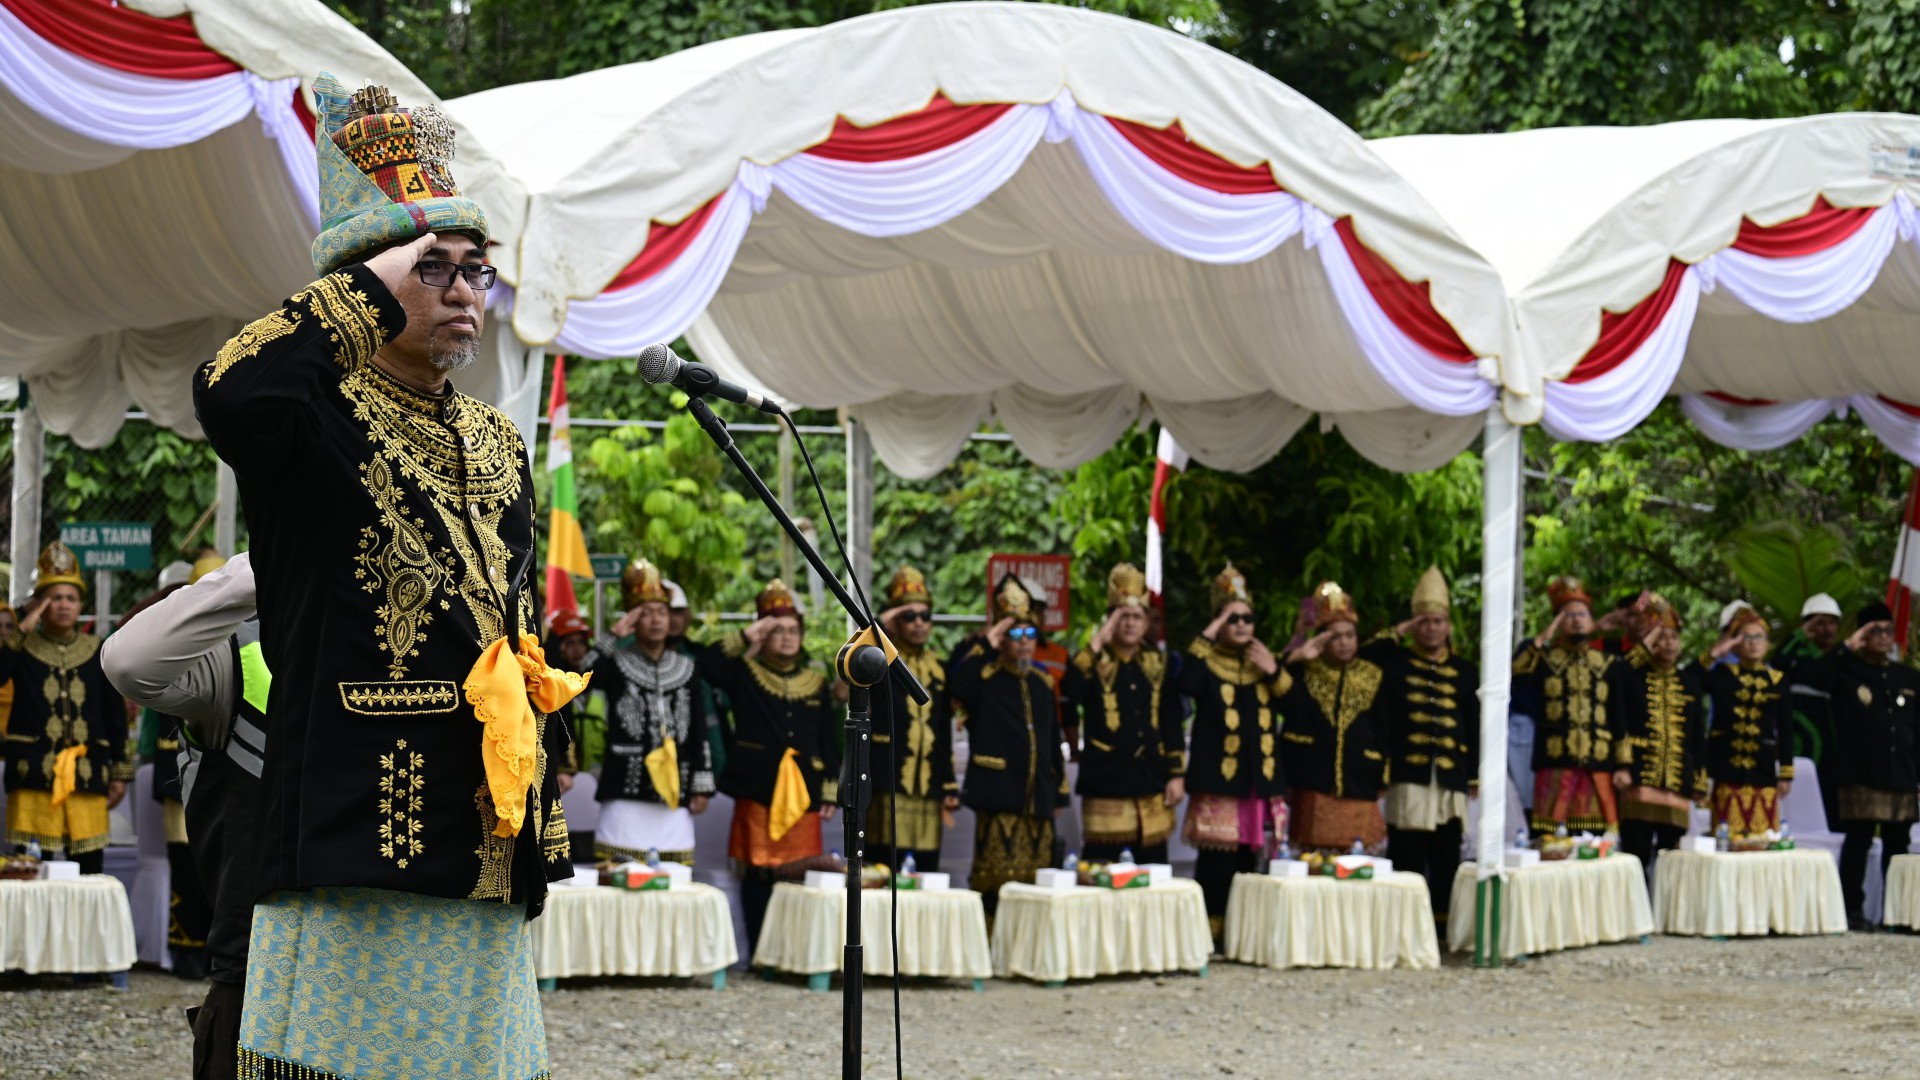 PT Mifa Bersaudara Gelar Upacara Bendera dengan Baju Adat Aceh